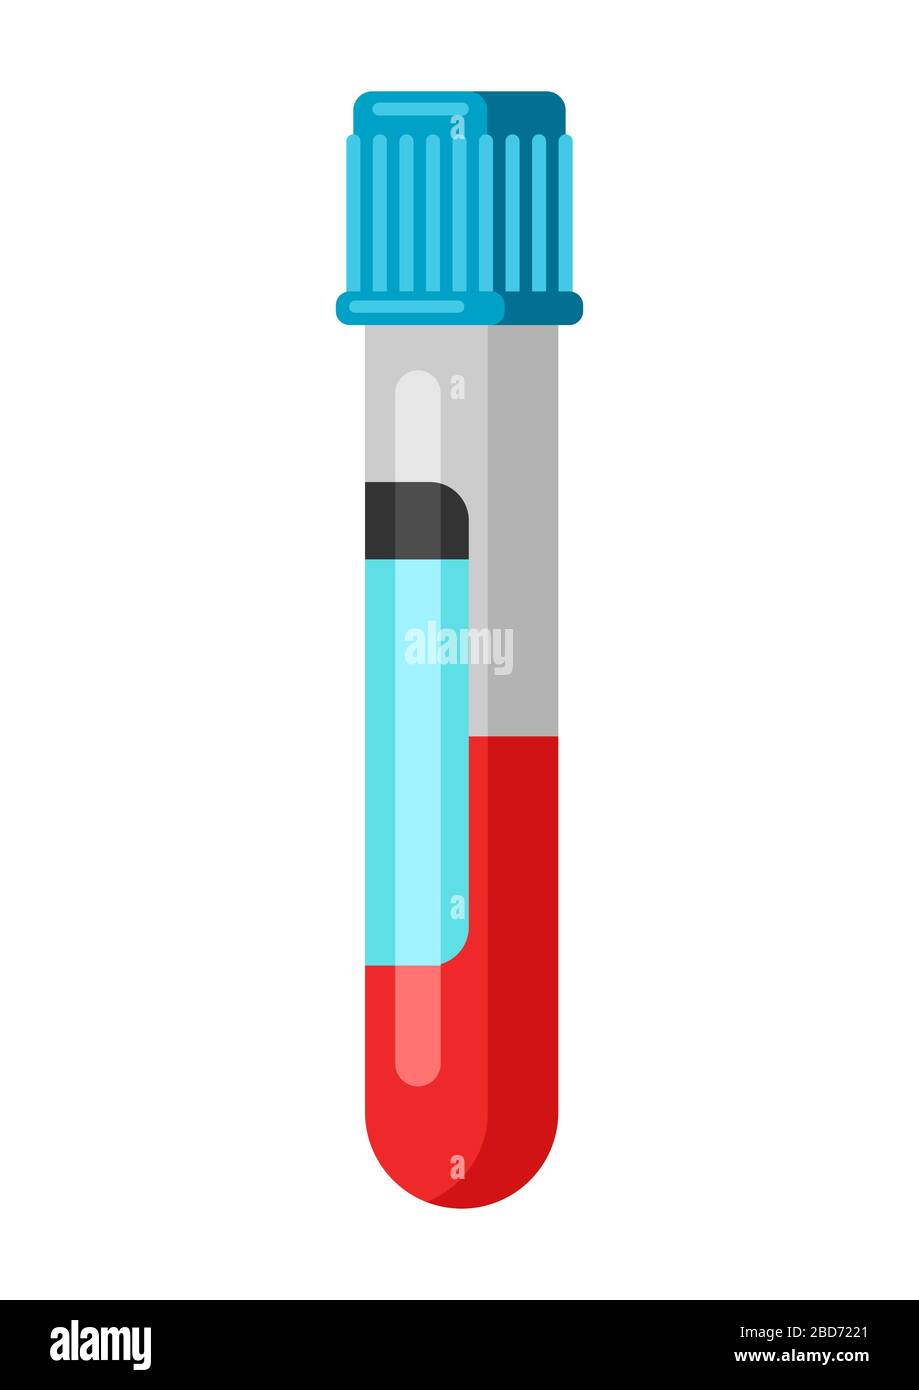 Immagine della provetta per analisi medica con sangue. Illustrazione Vettoriale